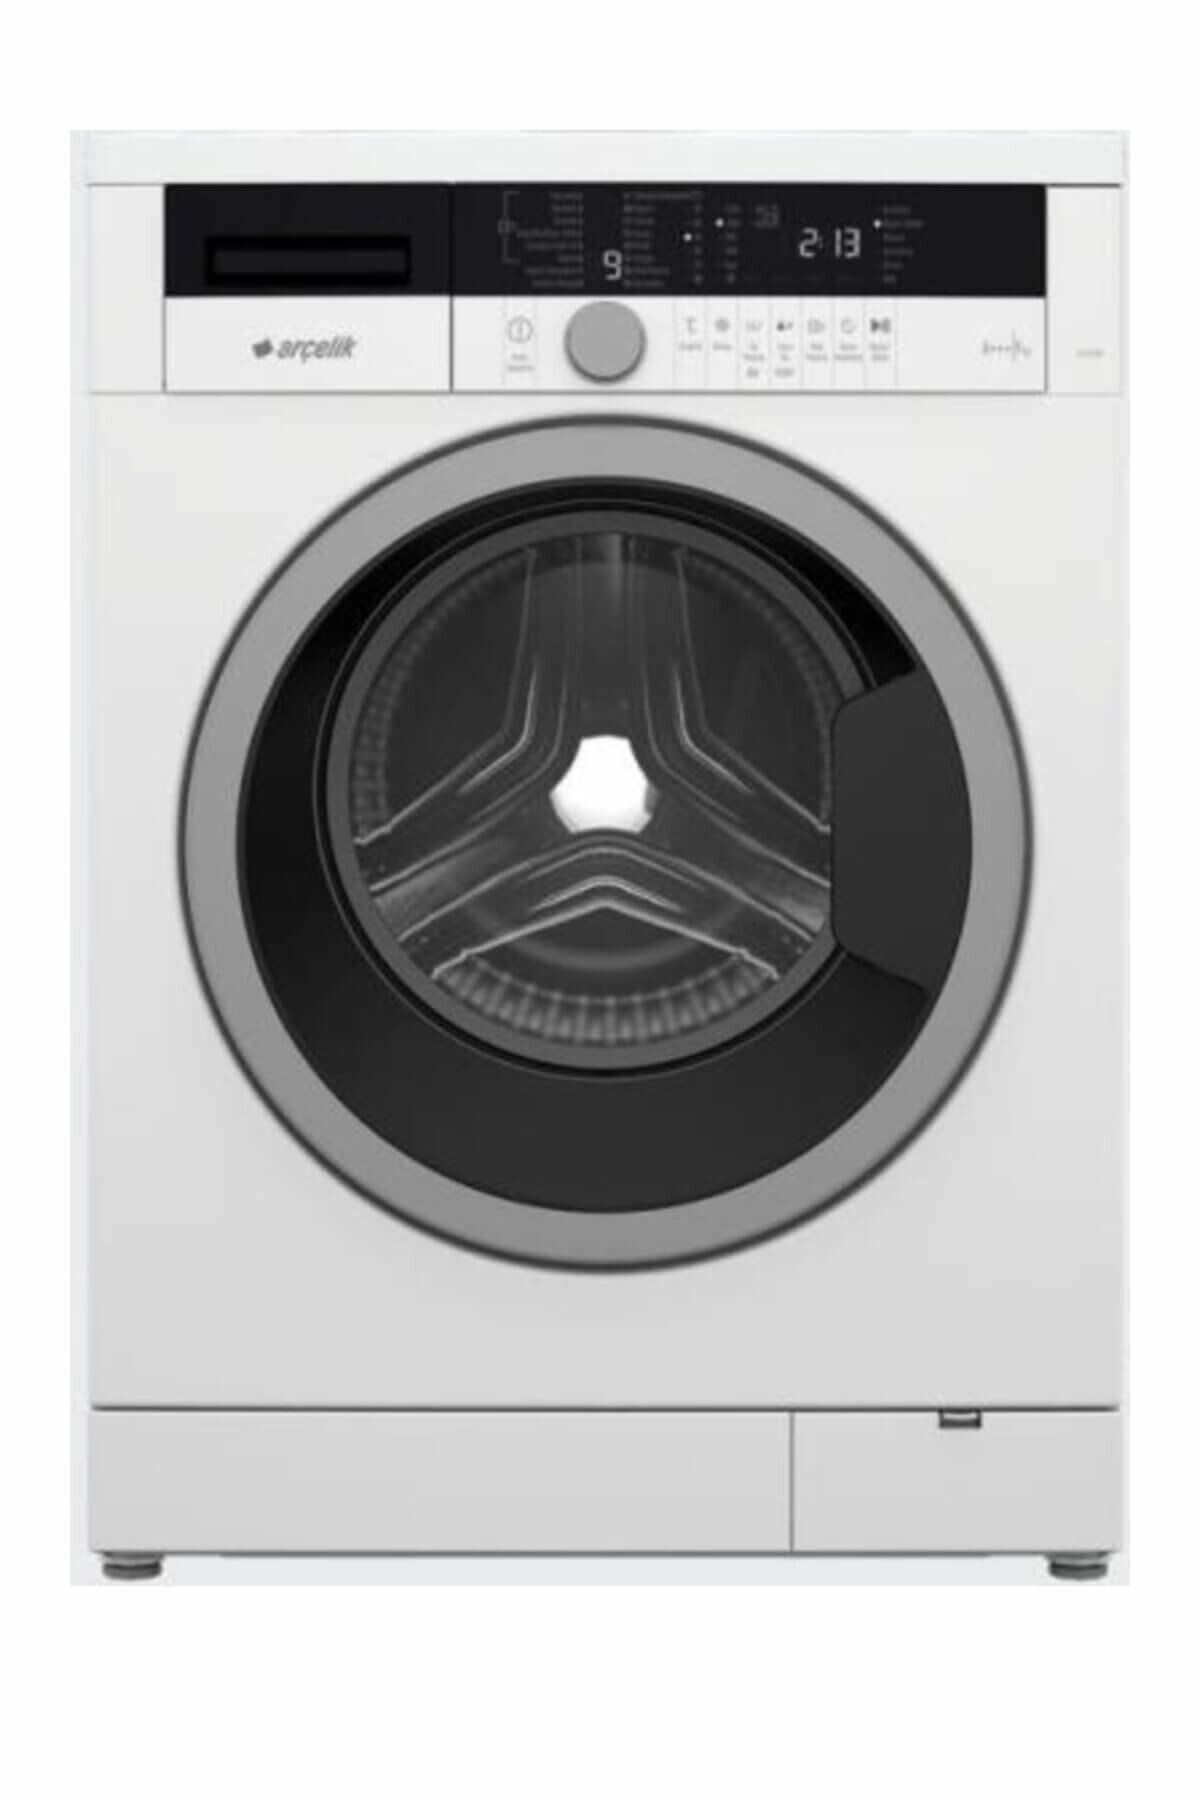 Arçelik 9123 9kg Ycm Çamaşır Makinesi (Beyaz)